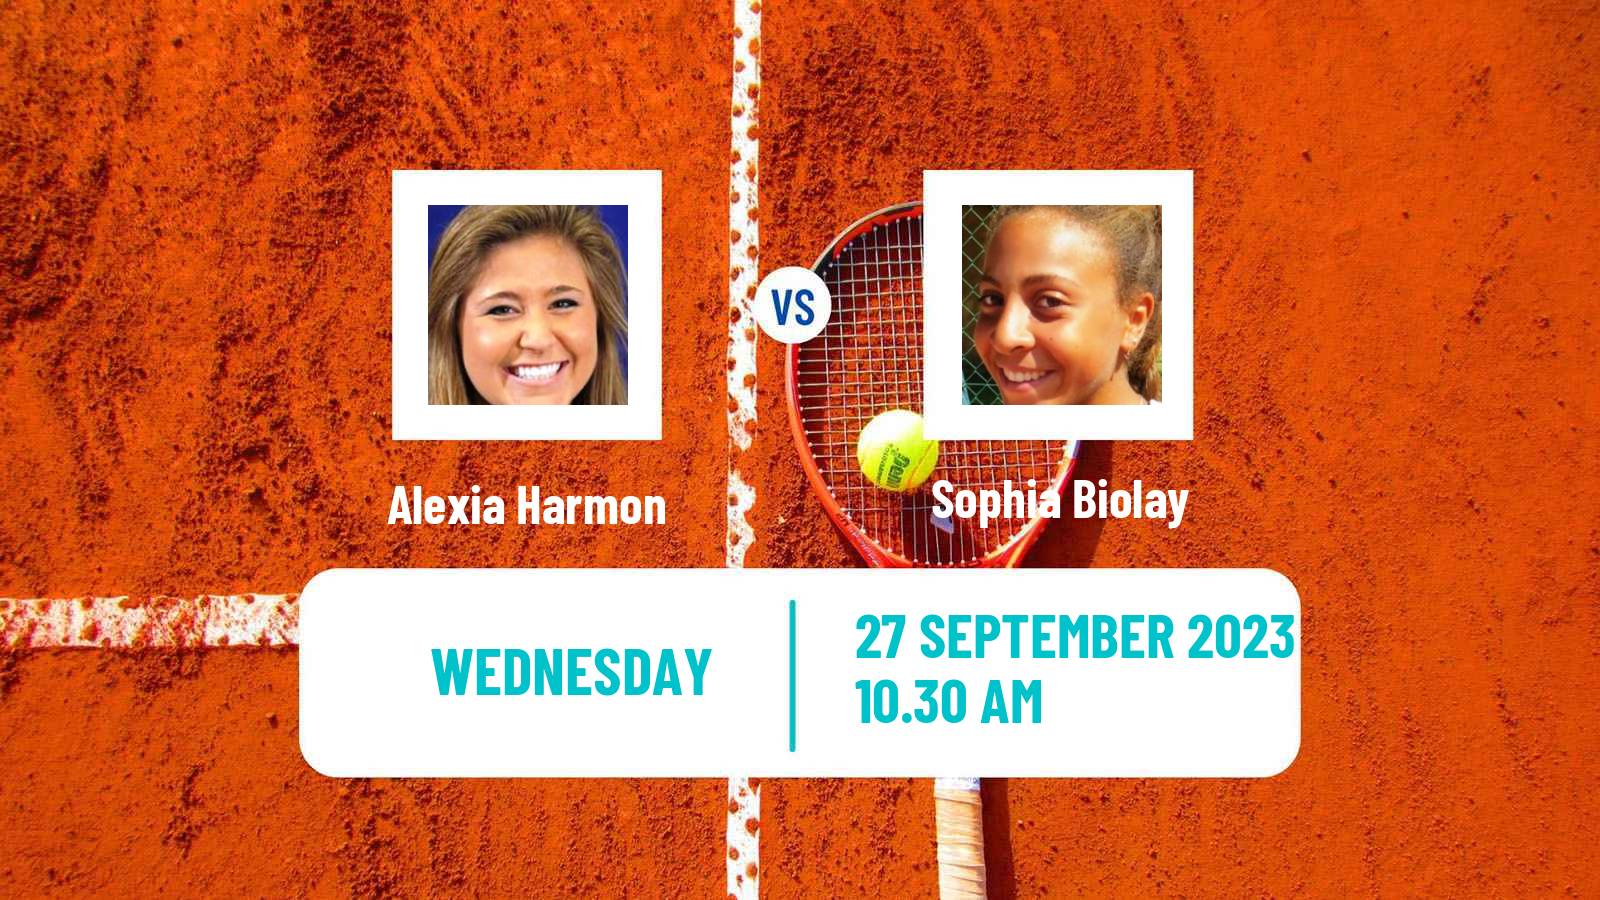 Tennis ITF W15 Hilton Head Sc Women Alexia Harmon - Sophia Biolay